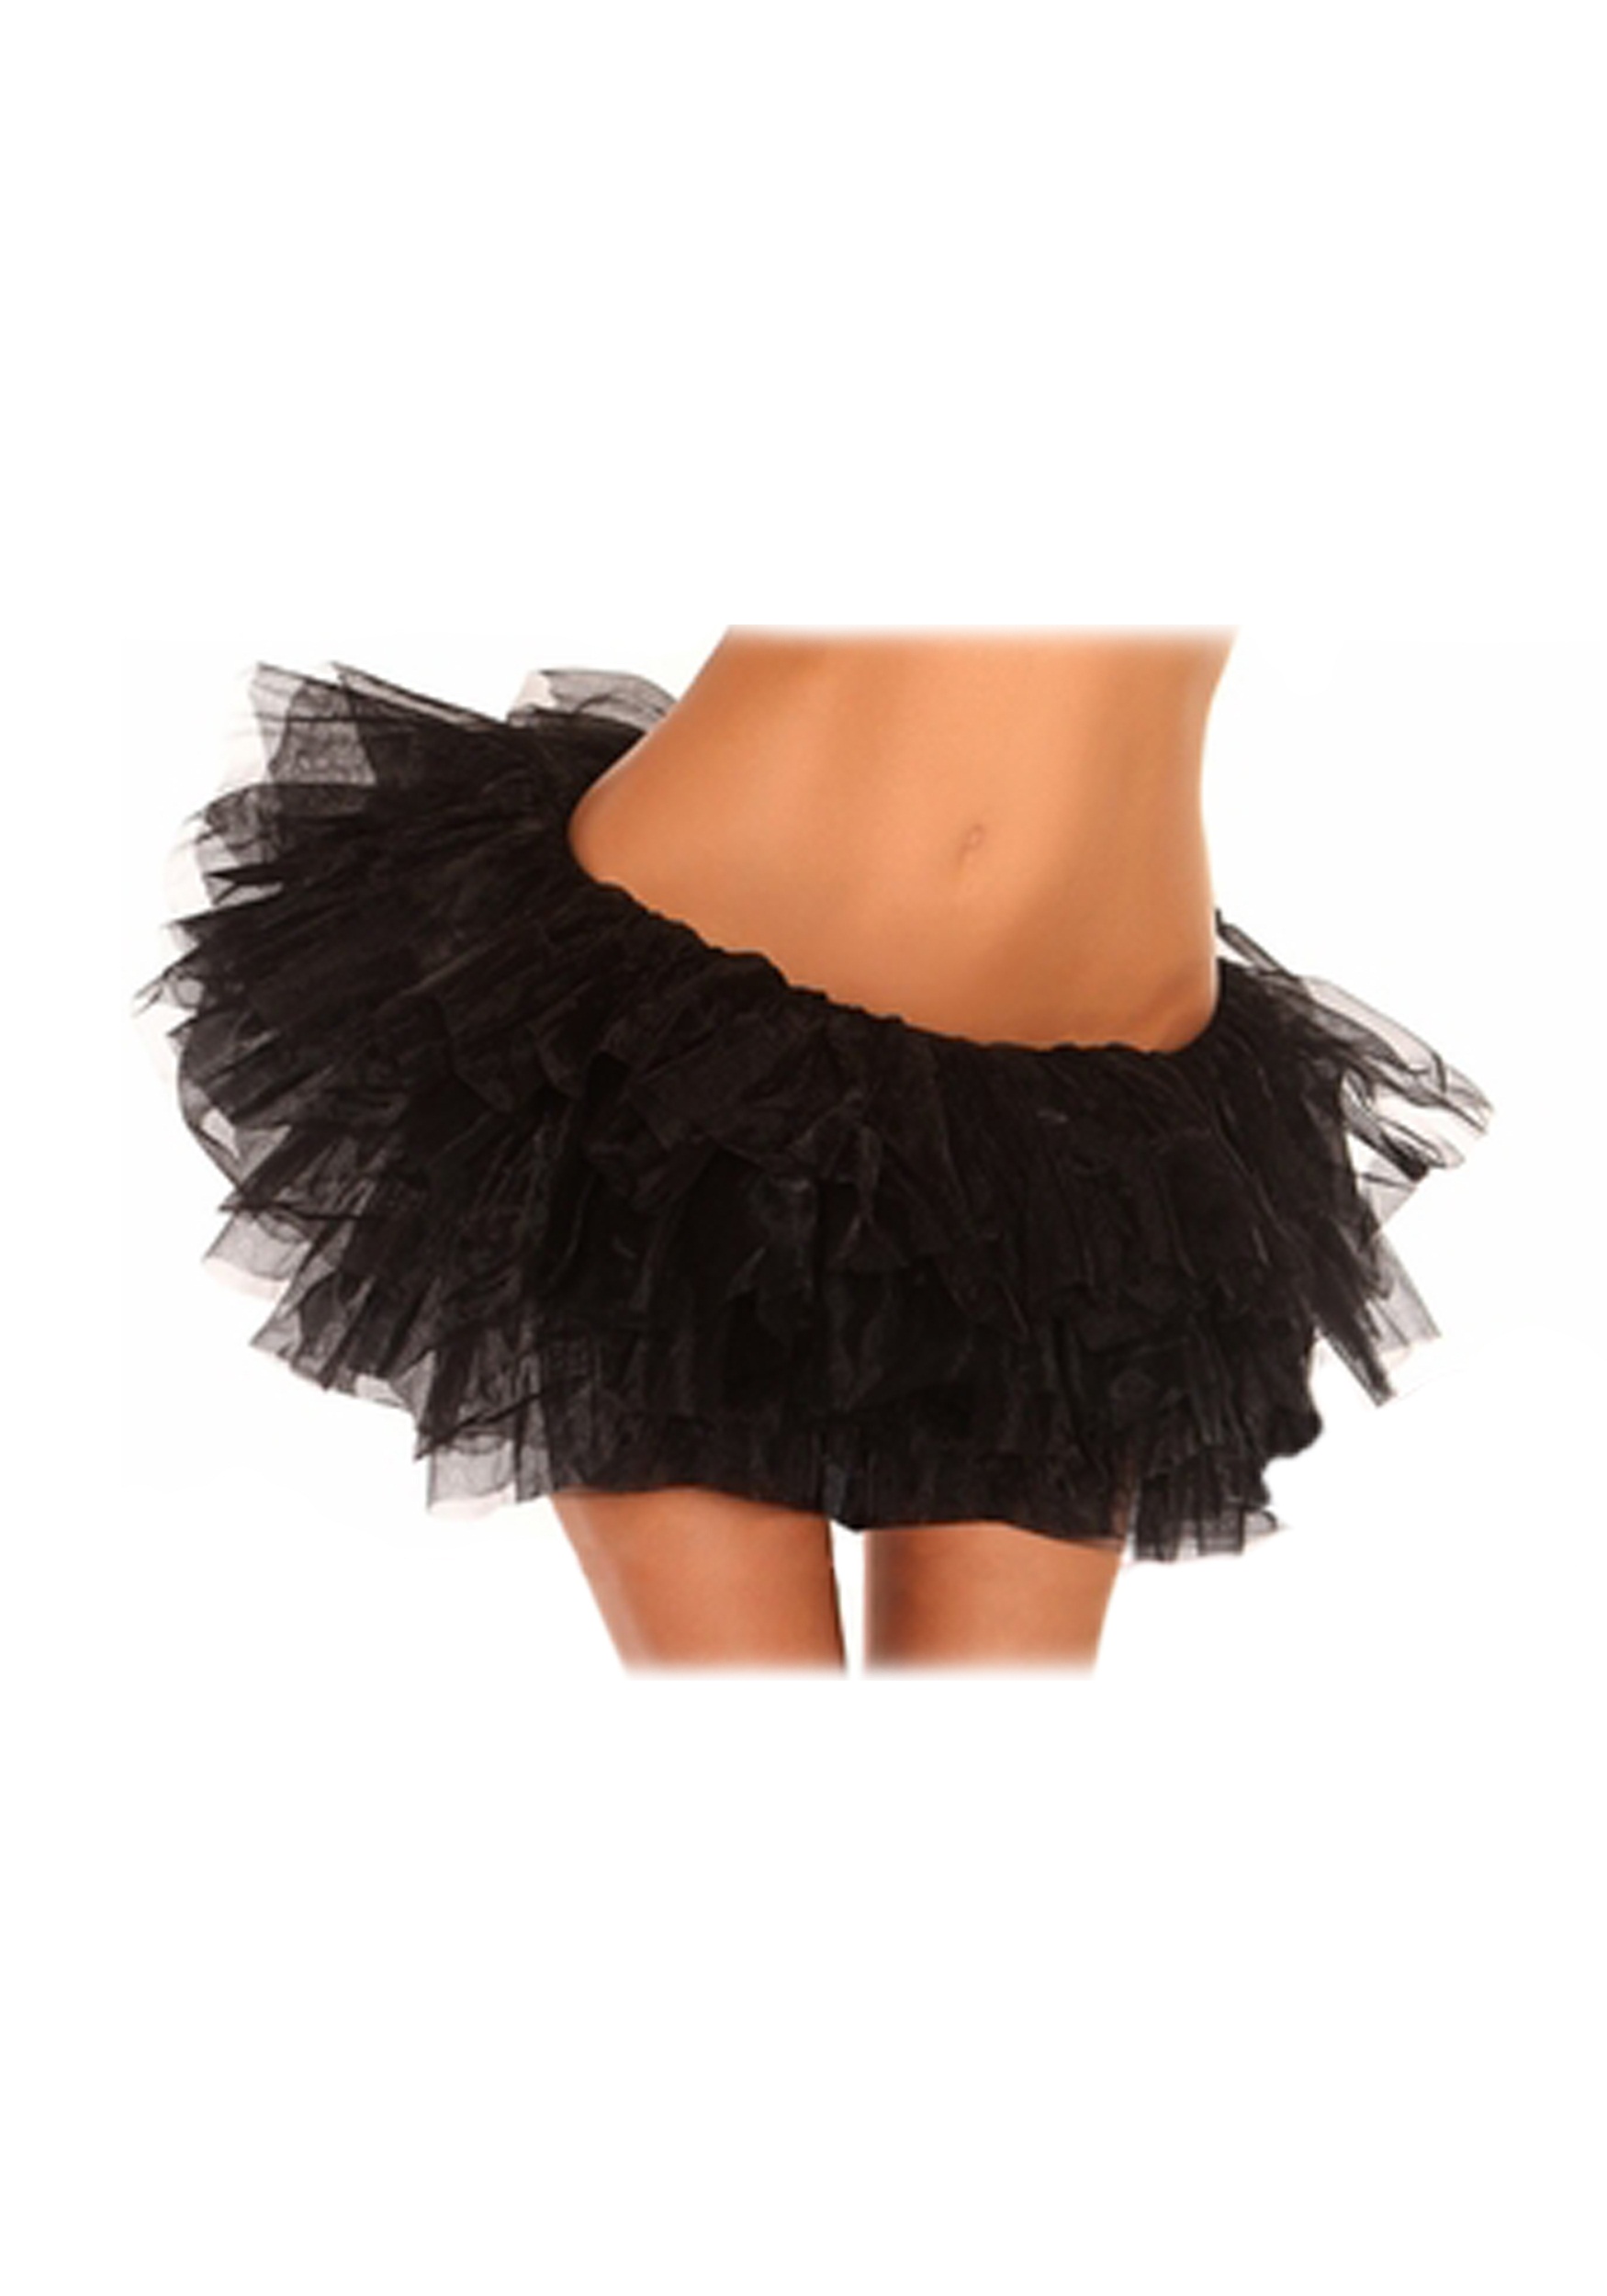 Photos - Fancy Dress Daisy Corsets Black Tutu Plus Size Petticoat 